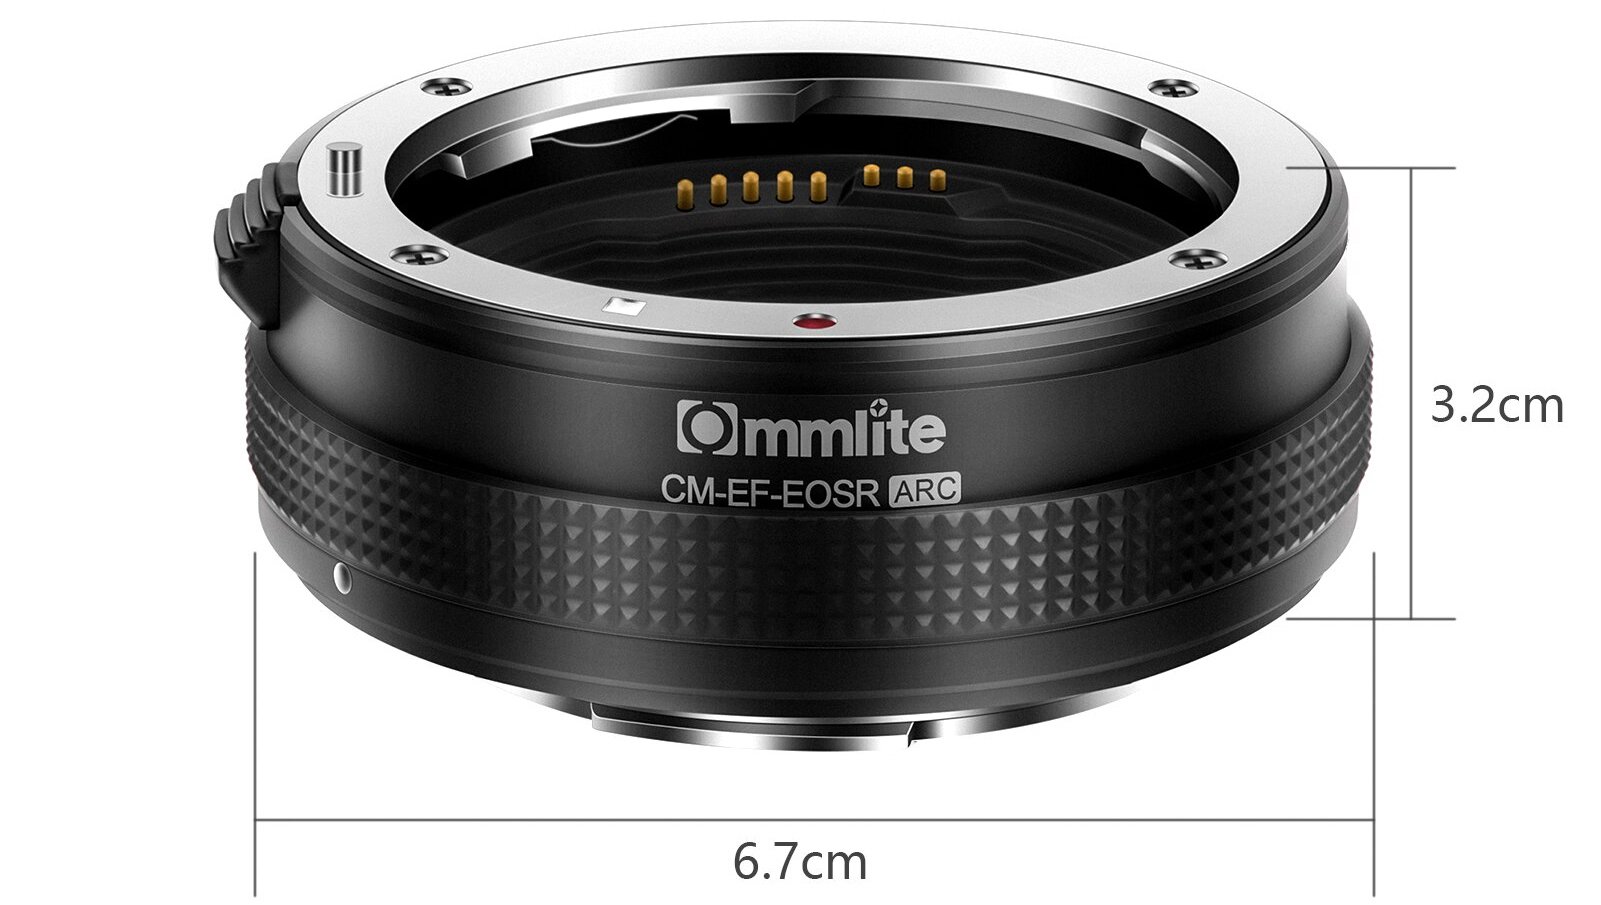 размеры кольца Commlite CM-EF-EOSR ARC